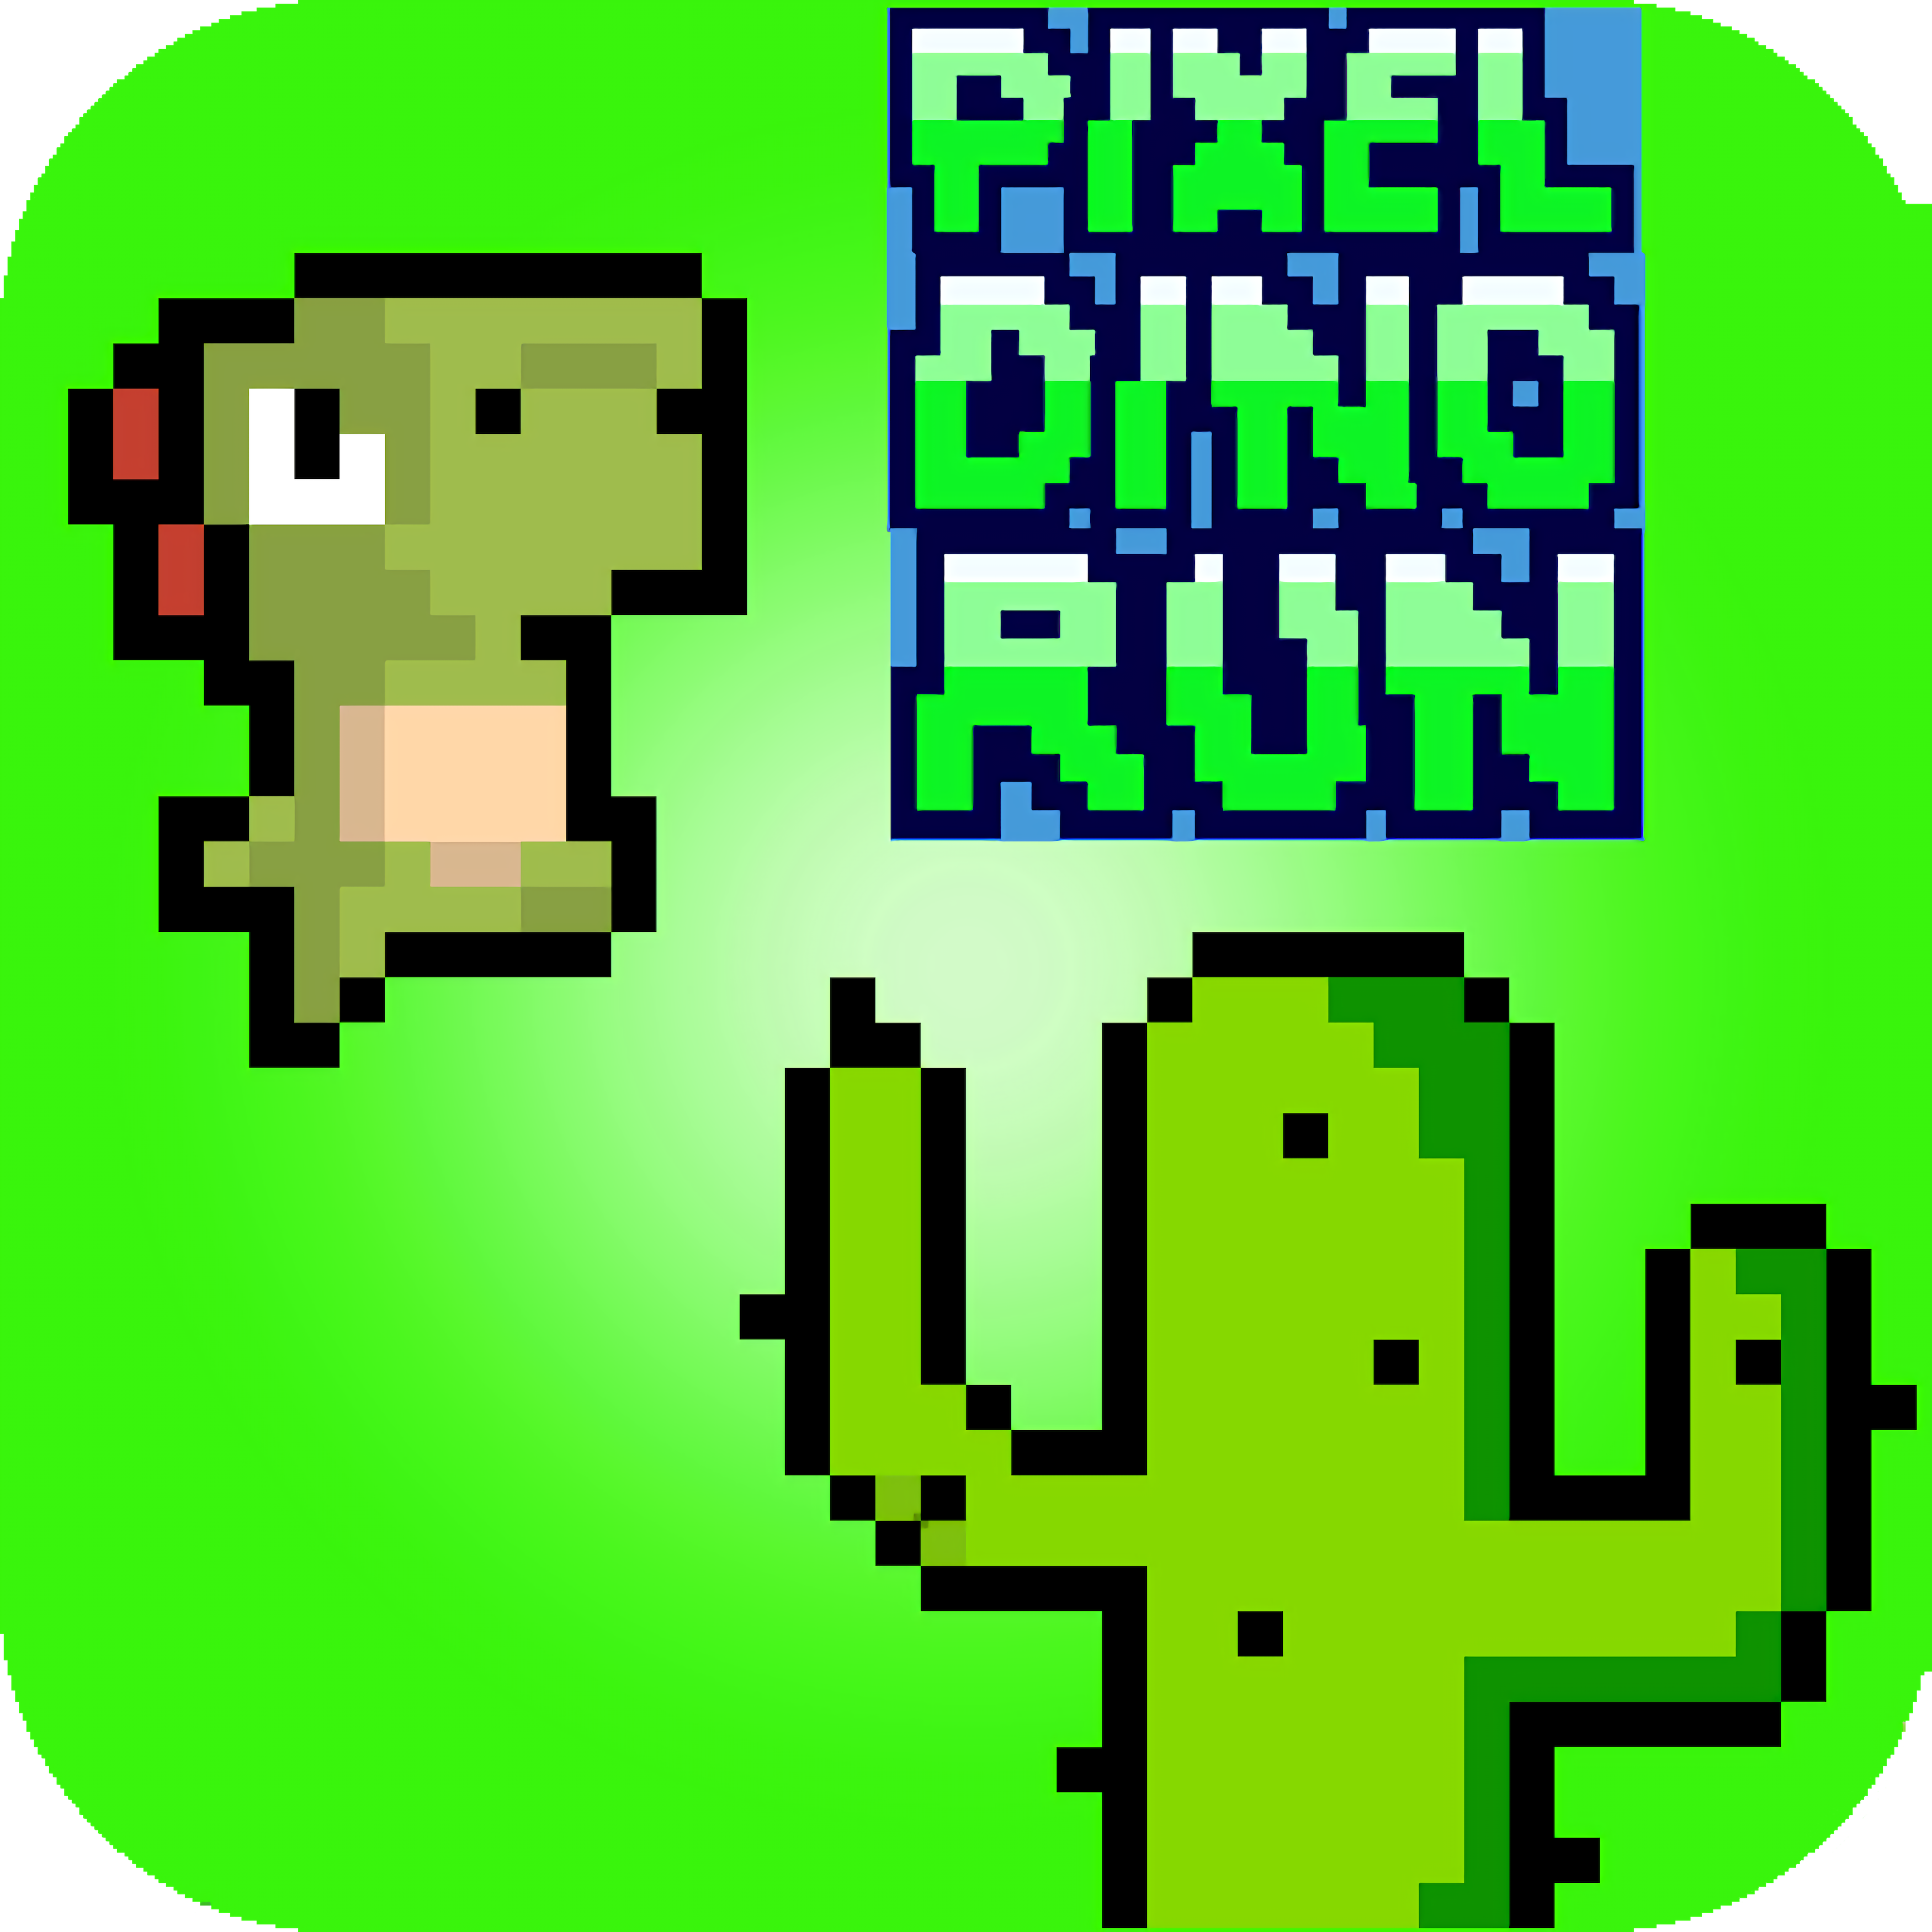 Dino Run - Free Addicting Game